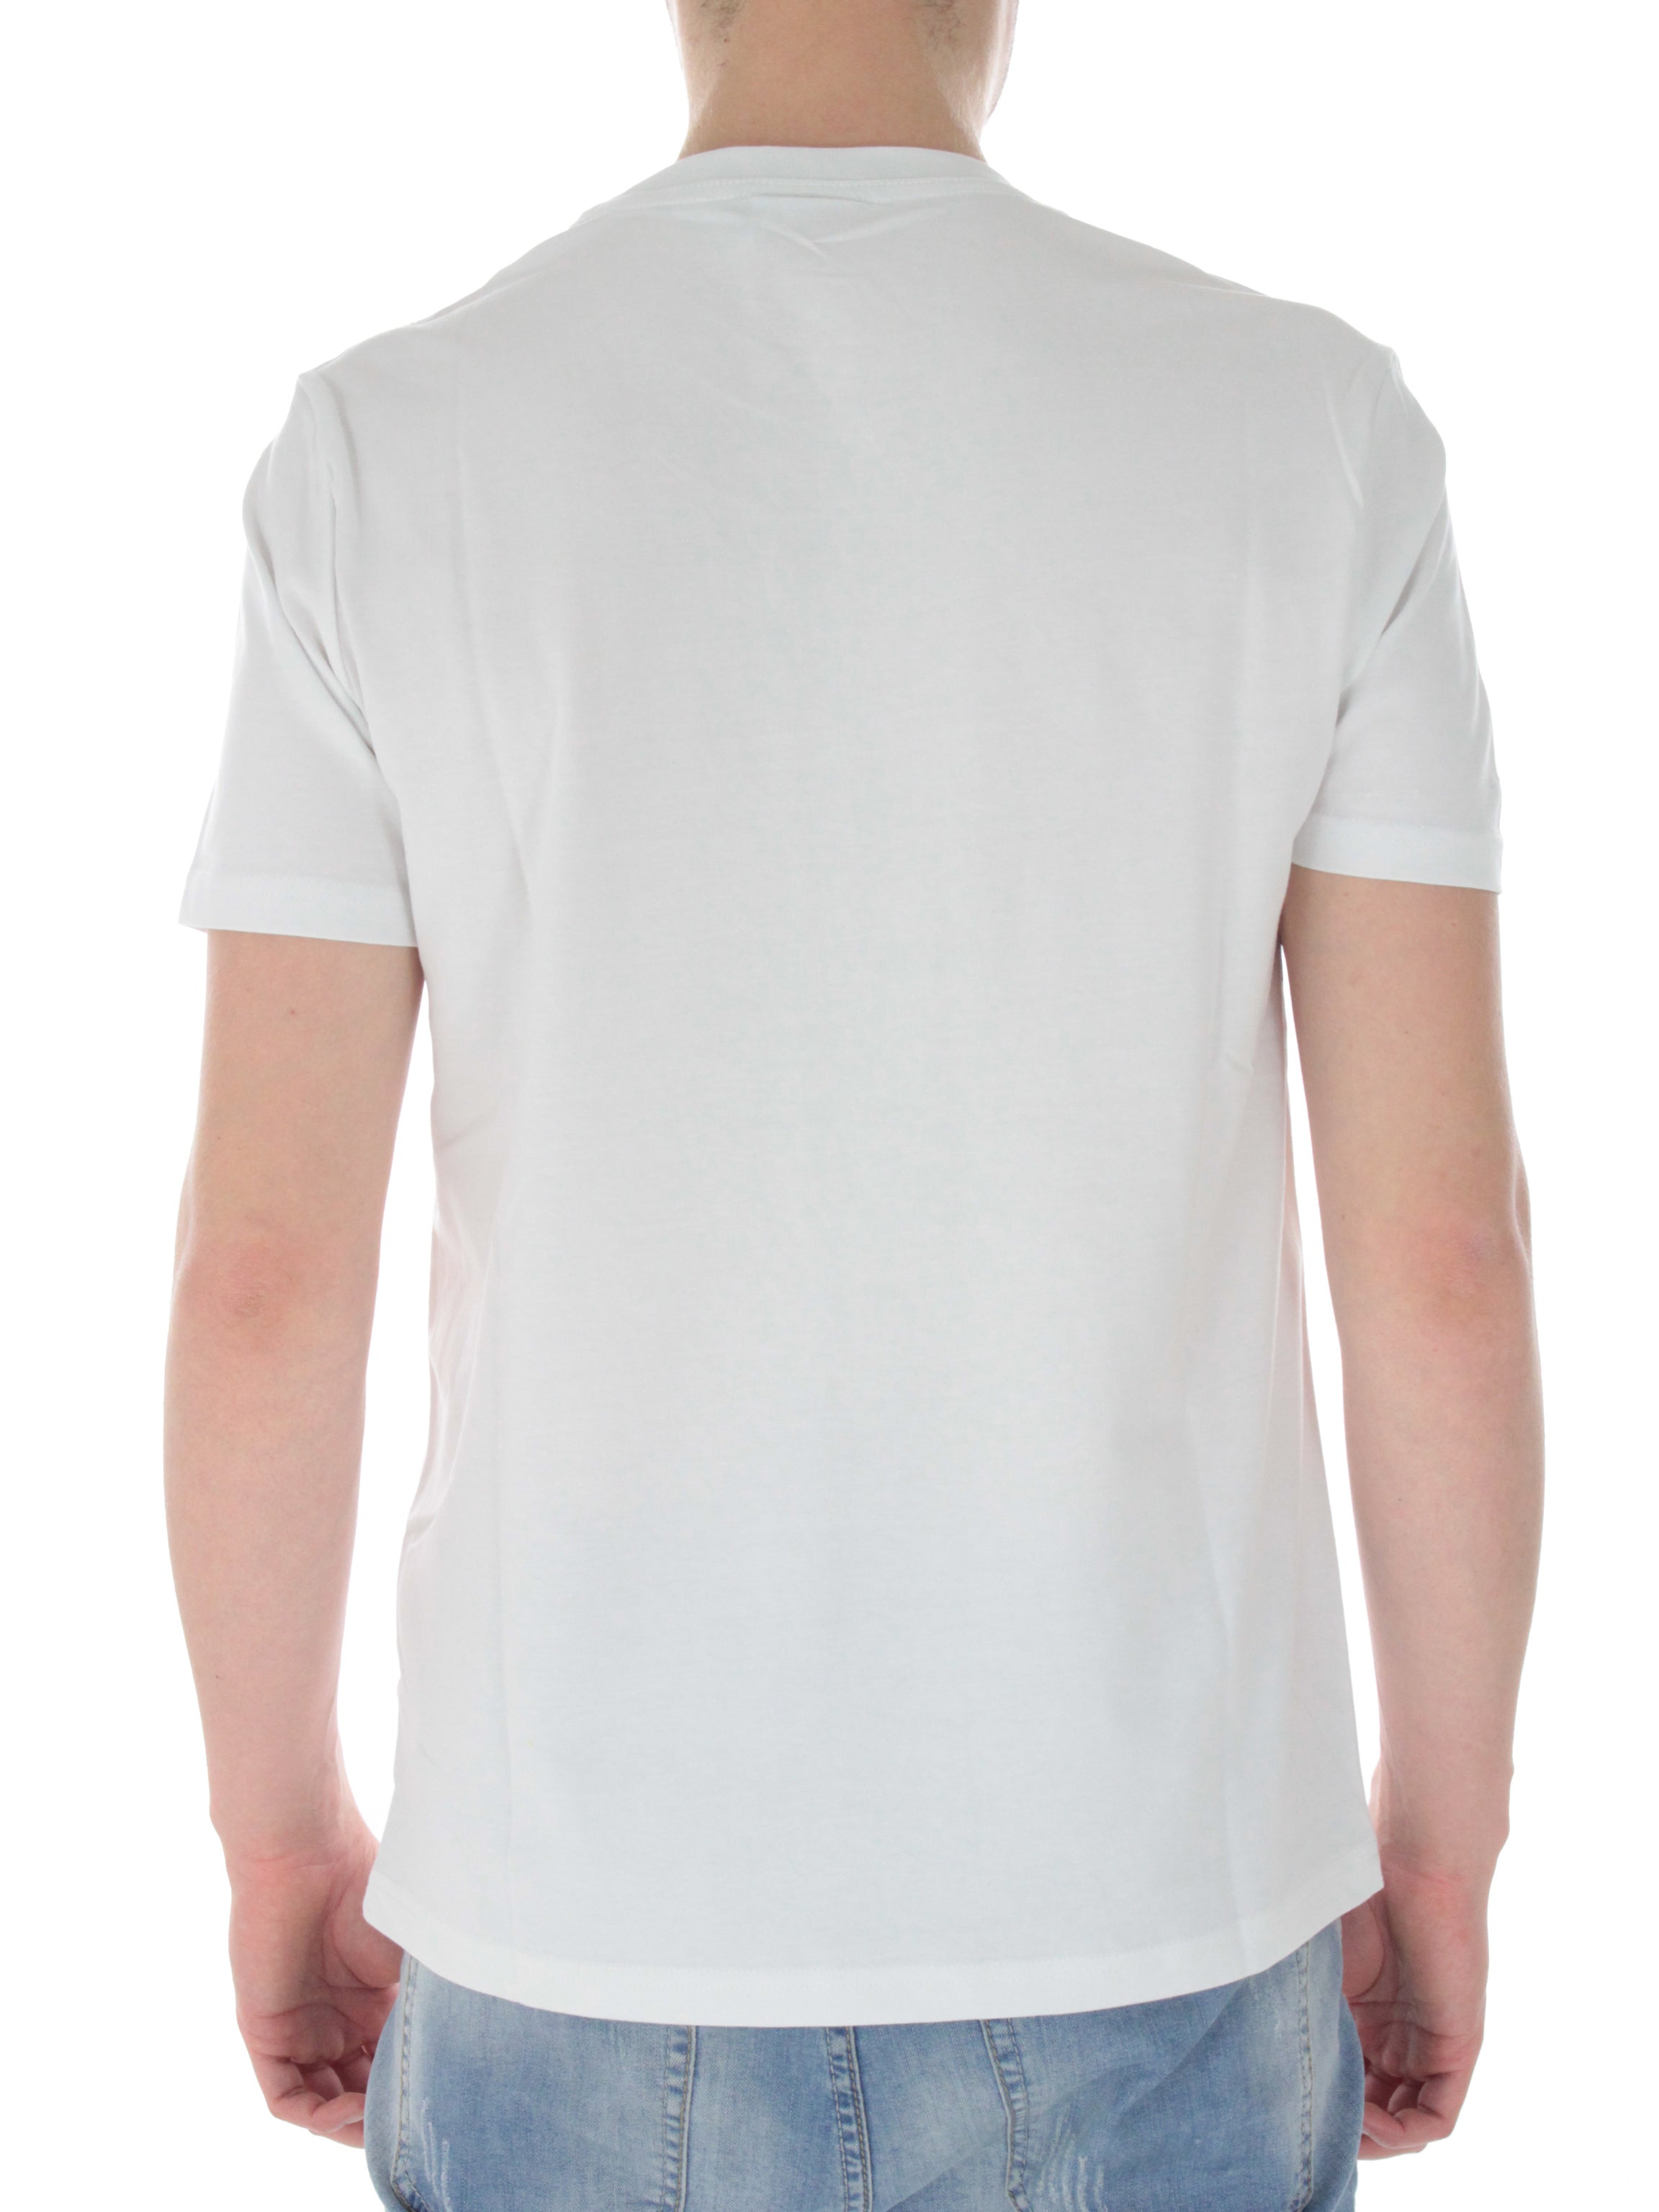 Spectra t-shirt 502.176632